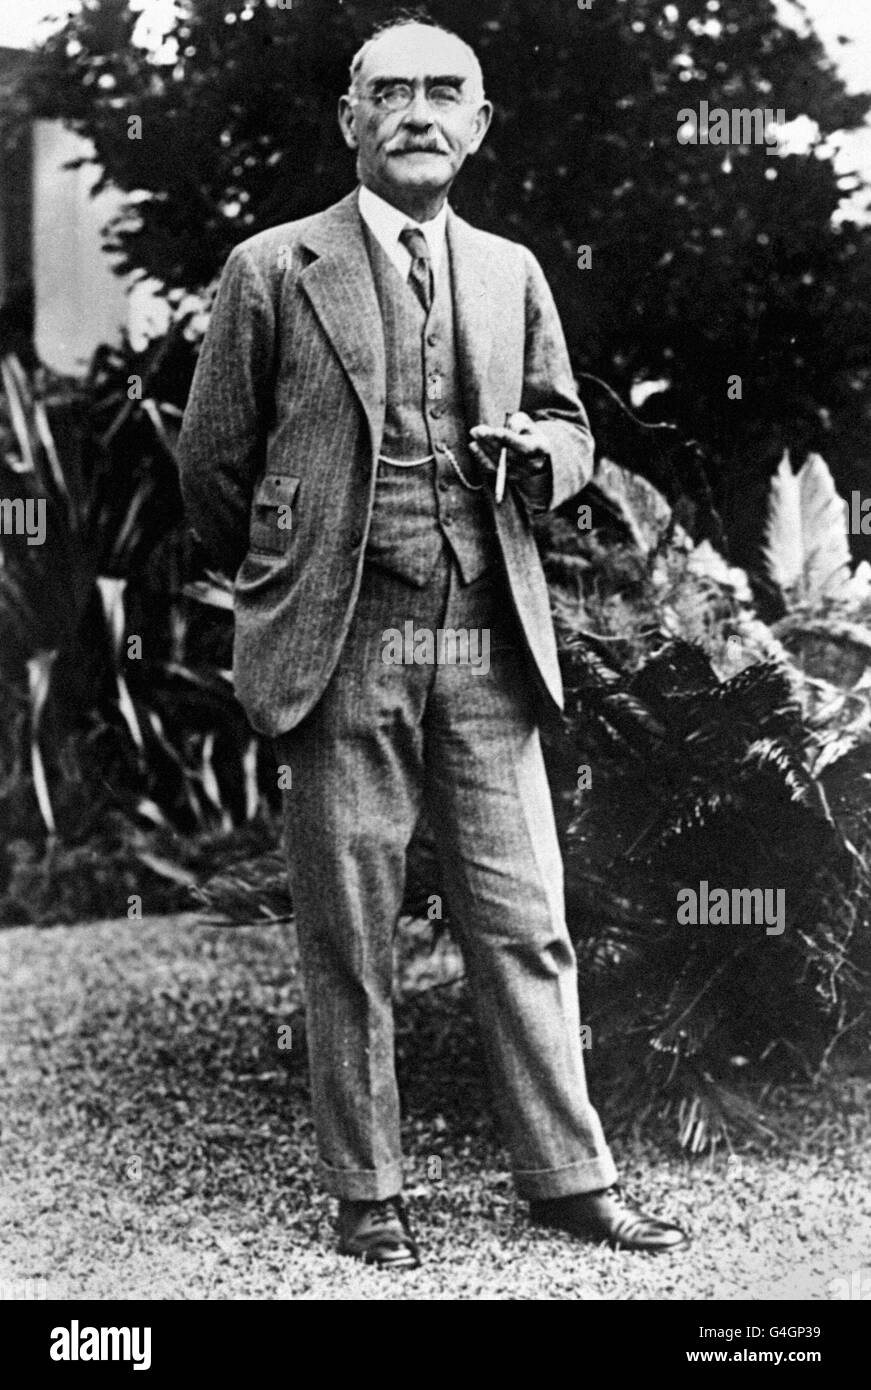 Literatur - Rudyard Kipling - Bermuda. Der britische Autor und Dichter Rudyard Kipling bei einem Besuch auf Bermuda. Stockfoto